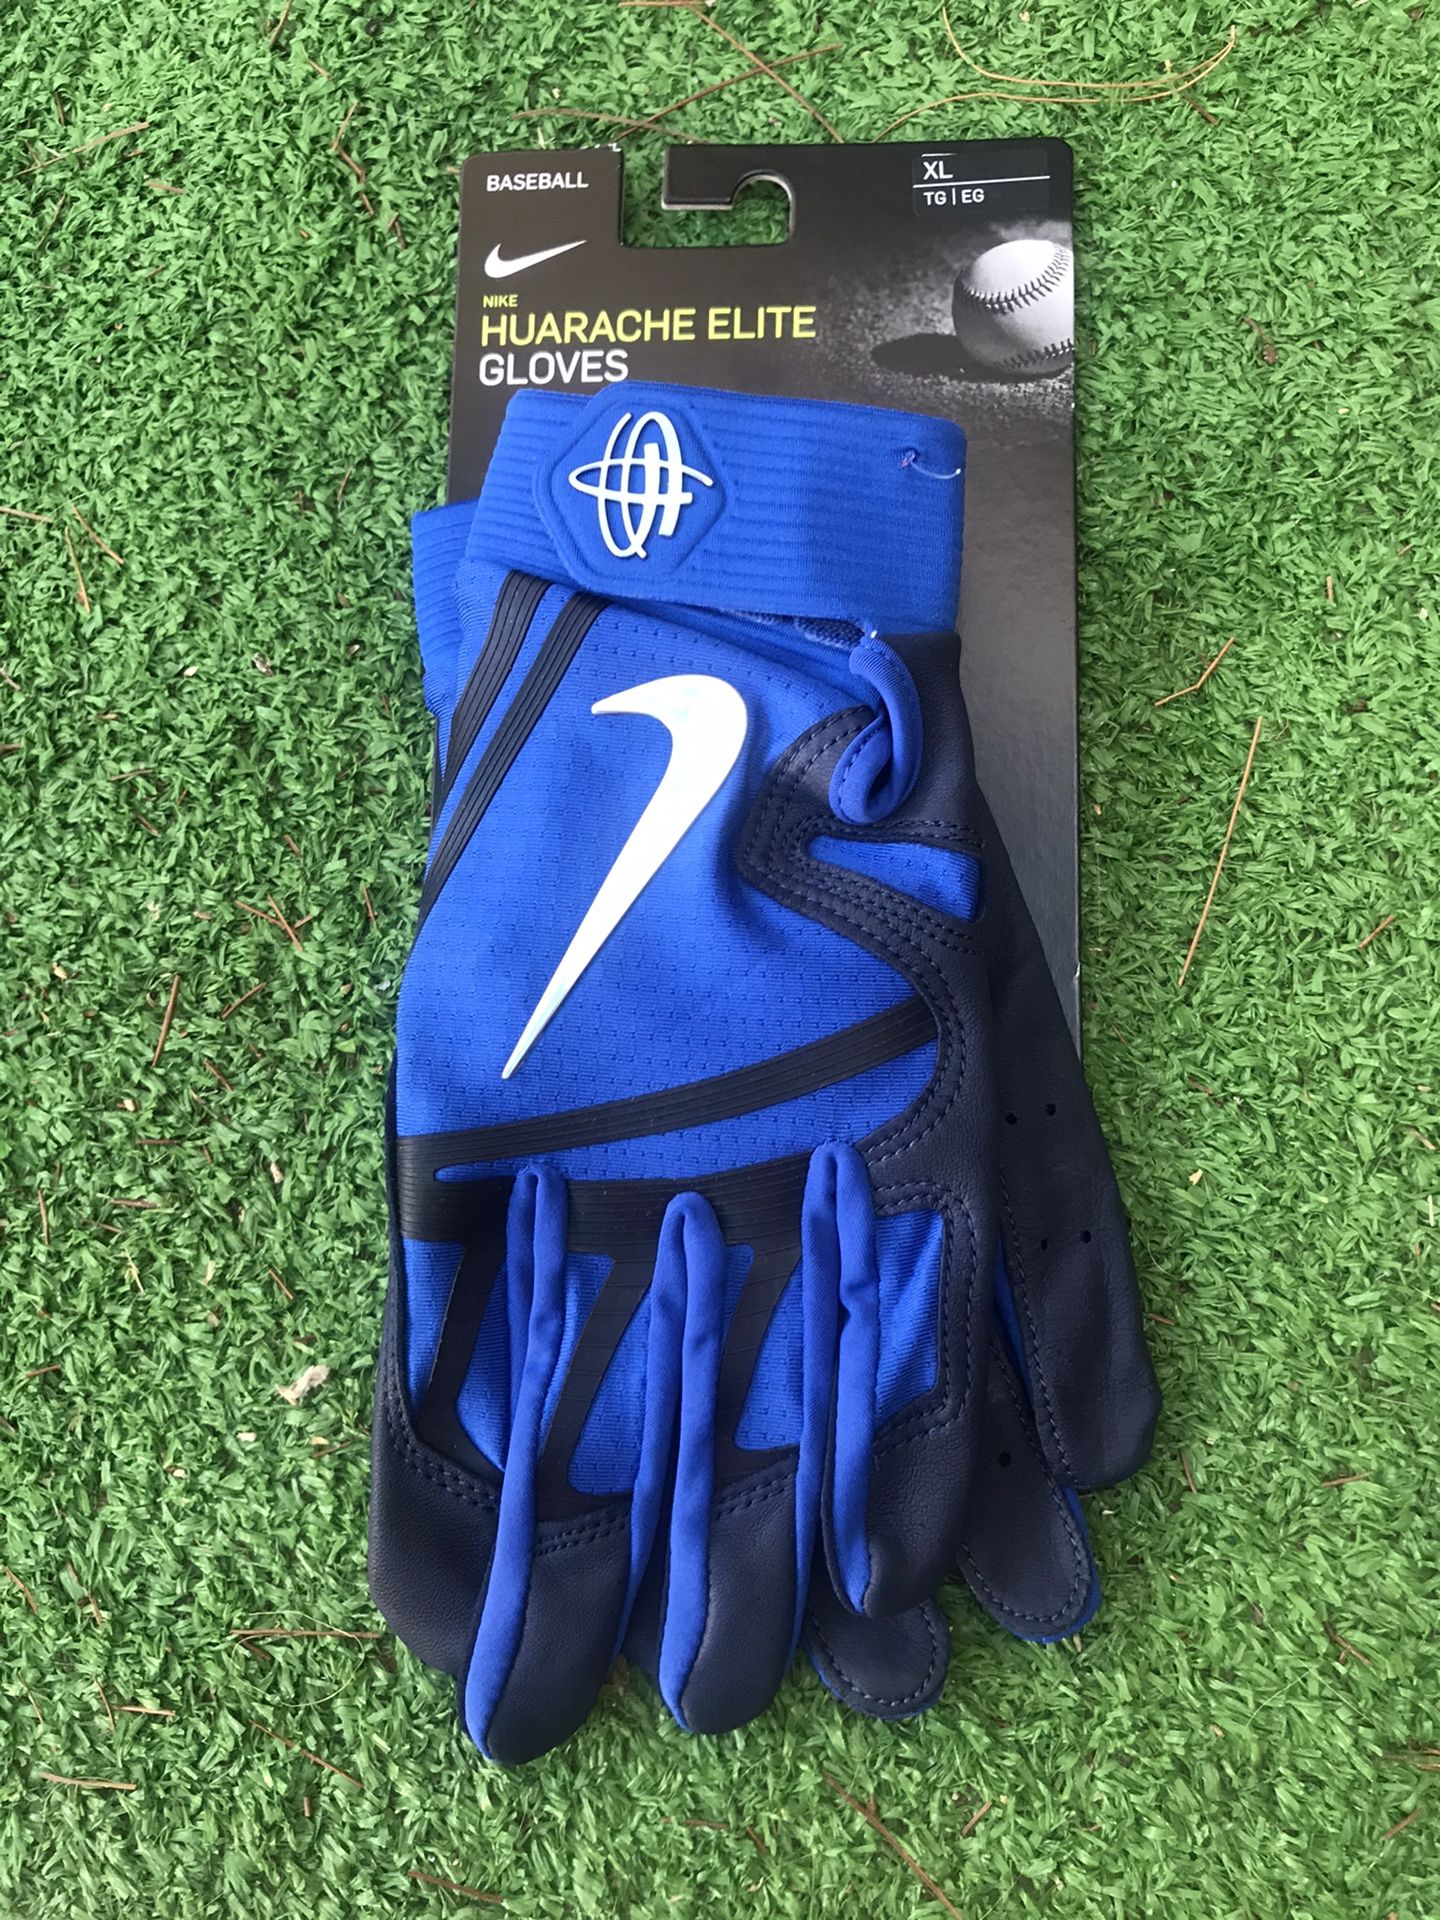 New XL Huarache Elite Batting Glove $35